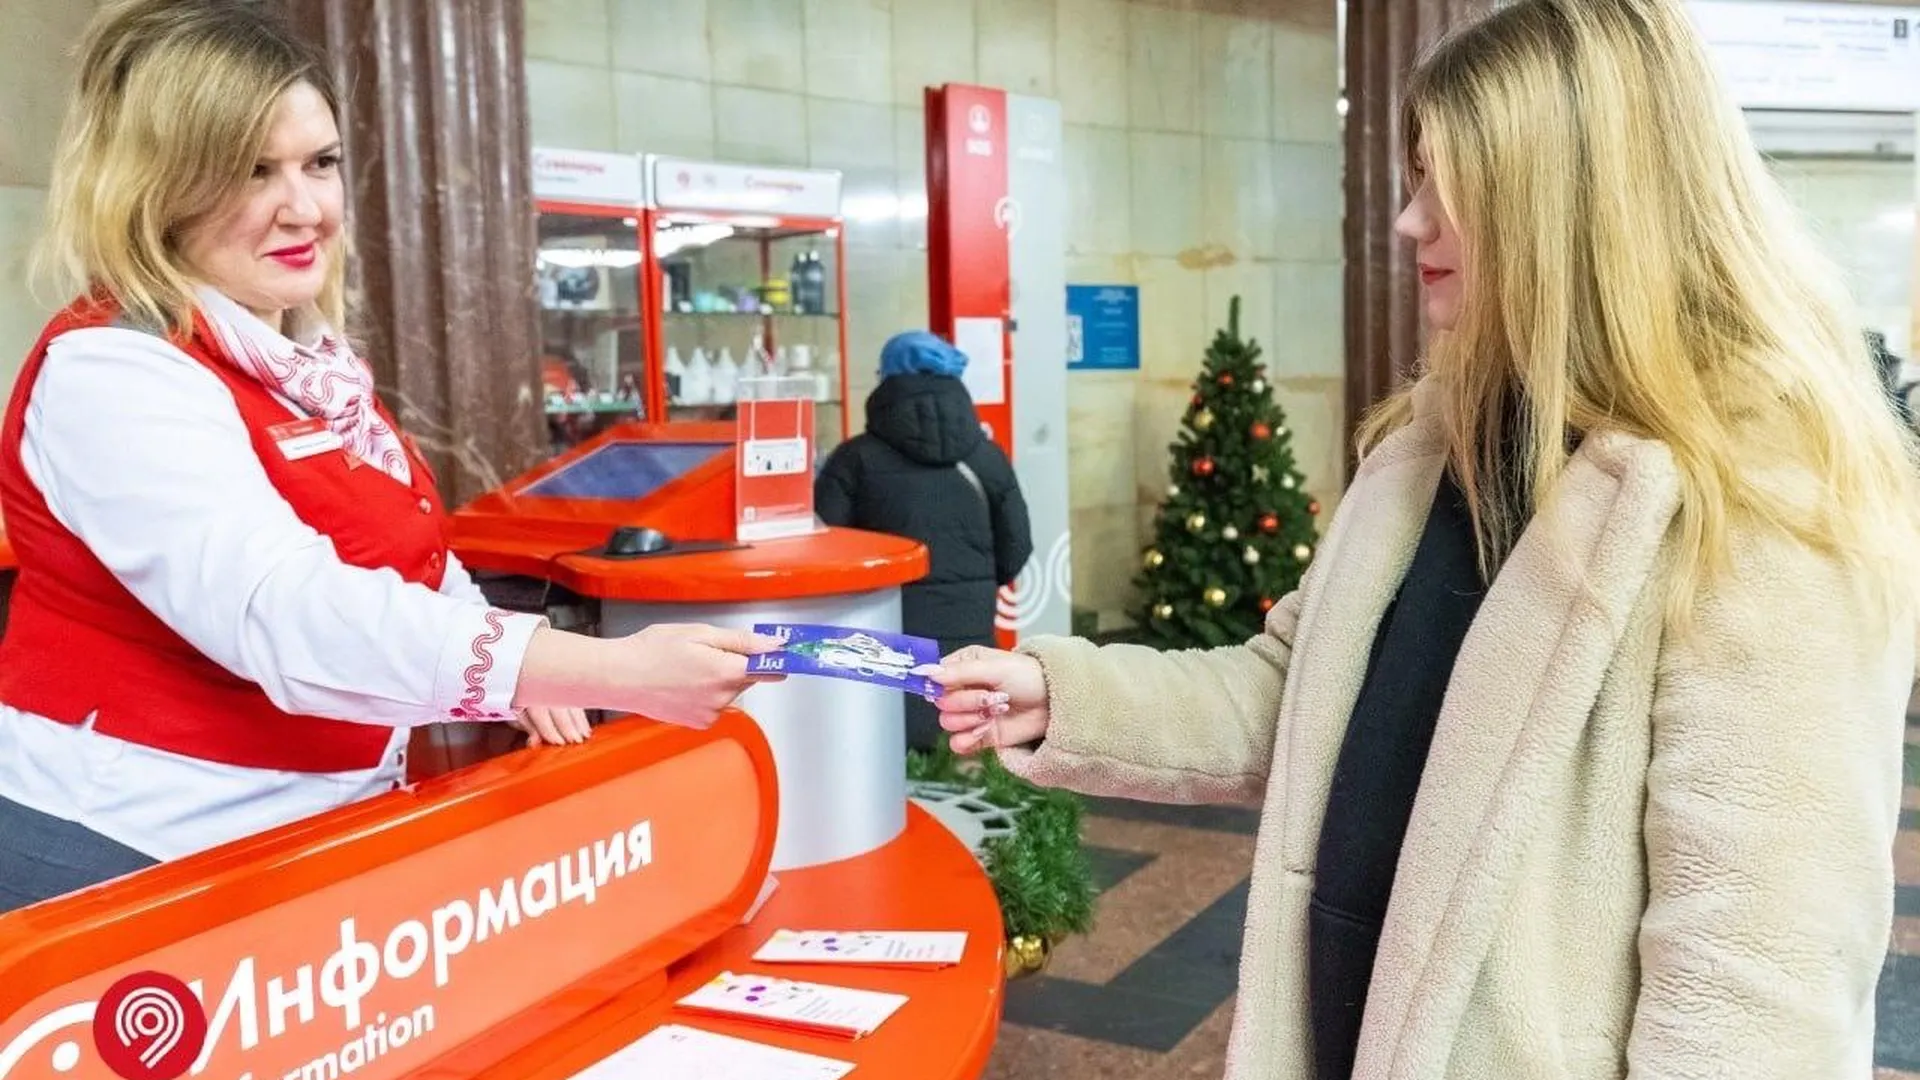 Фото: Московское метро / ВКонтакте